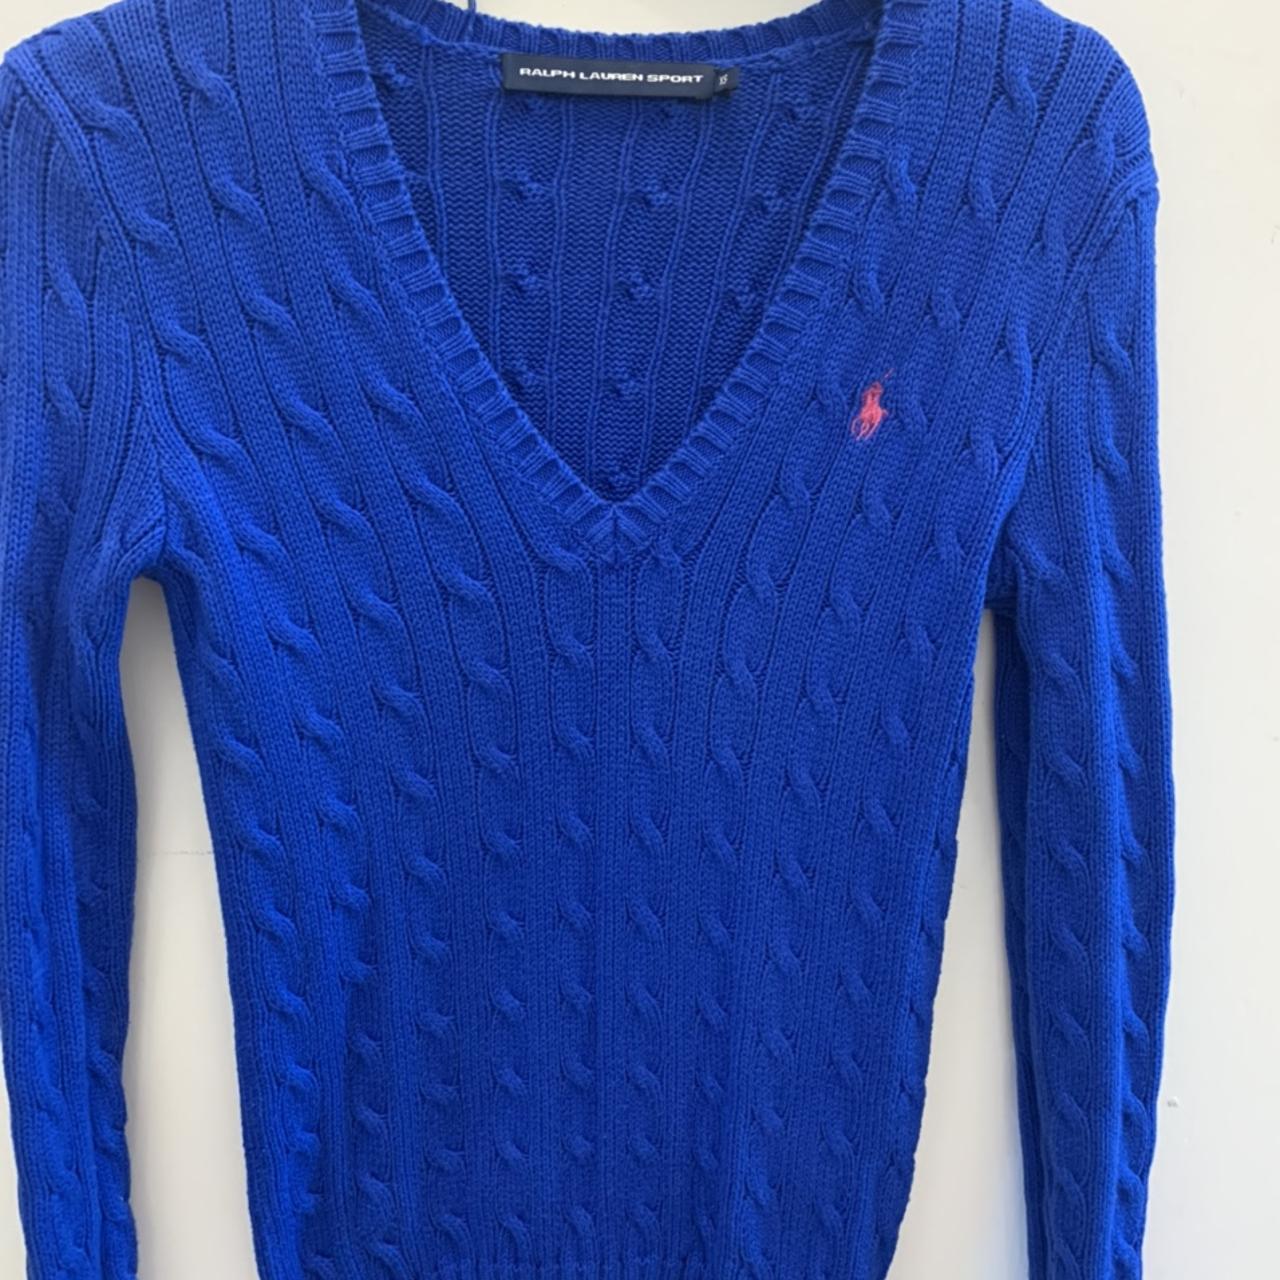 Blue #ralphlauren #jumper worn once! - Depop